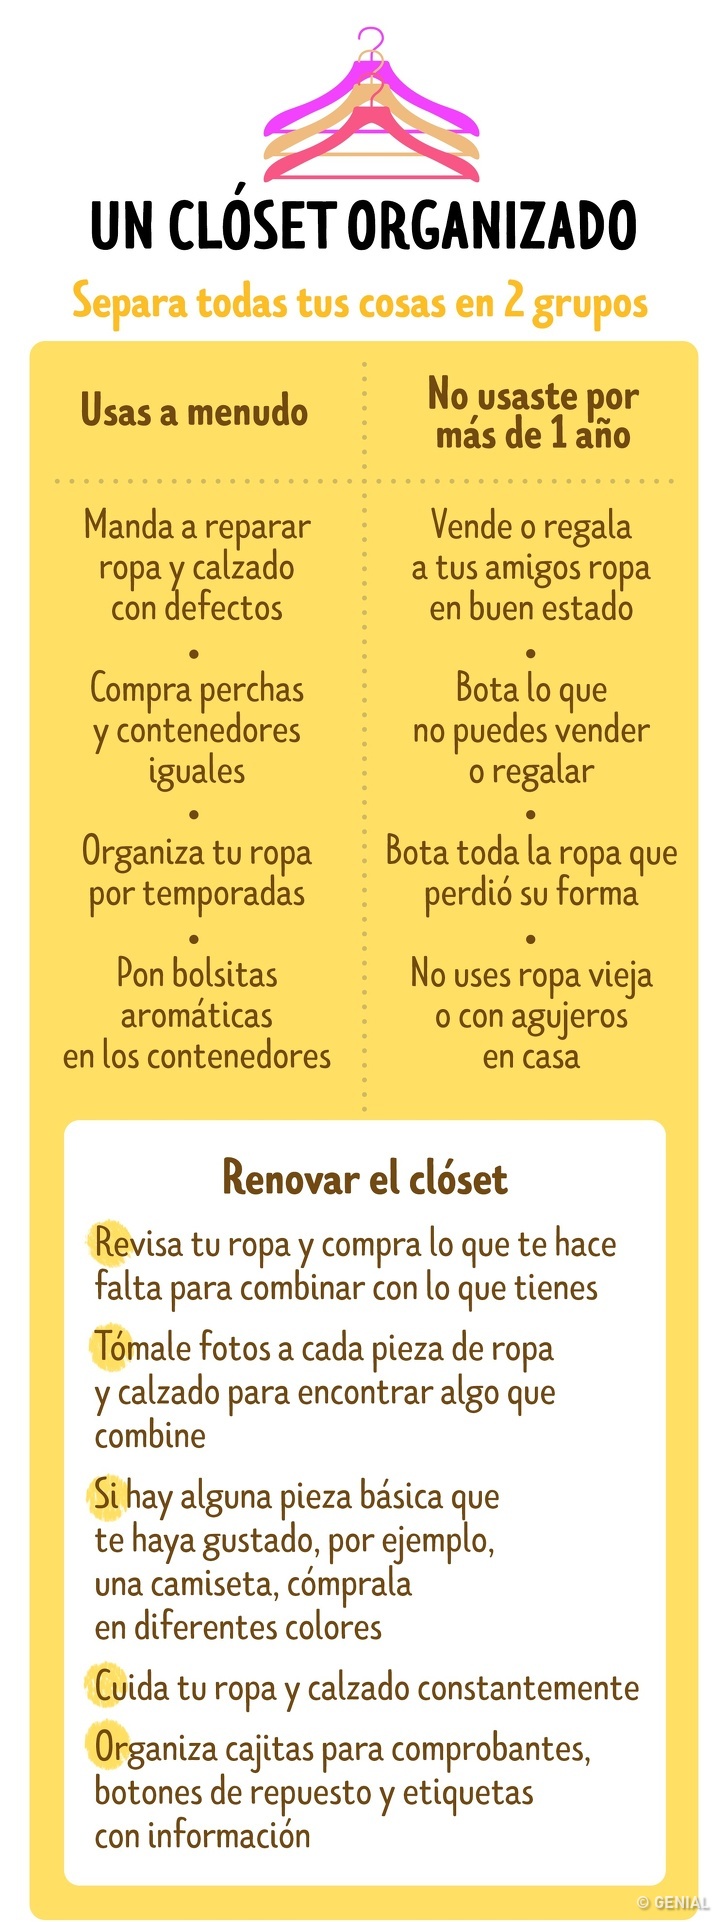 7 infografias para limpieza hogar